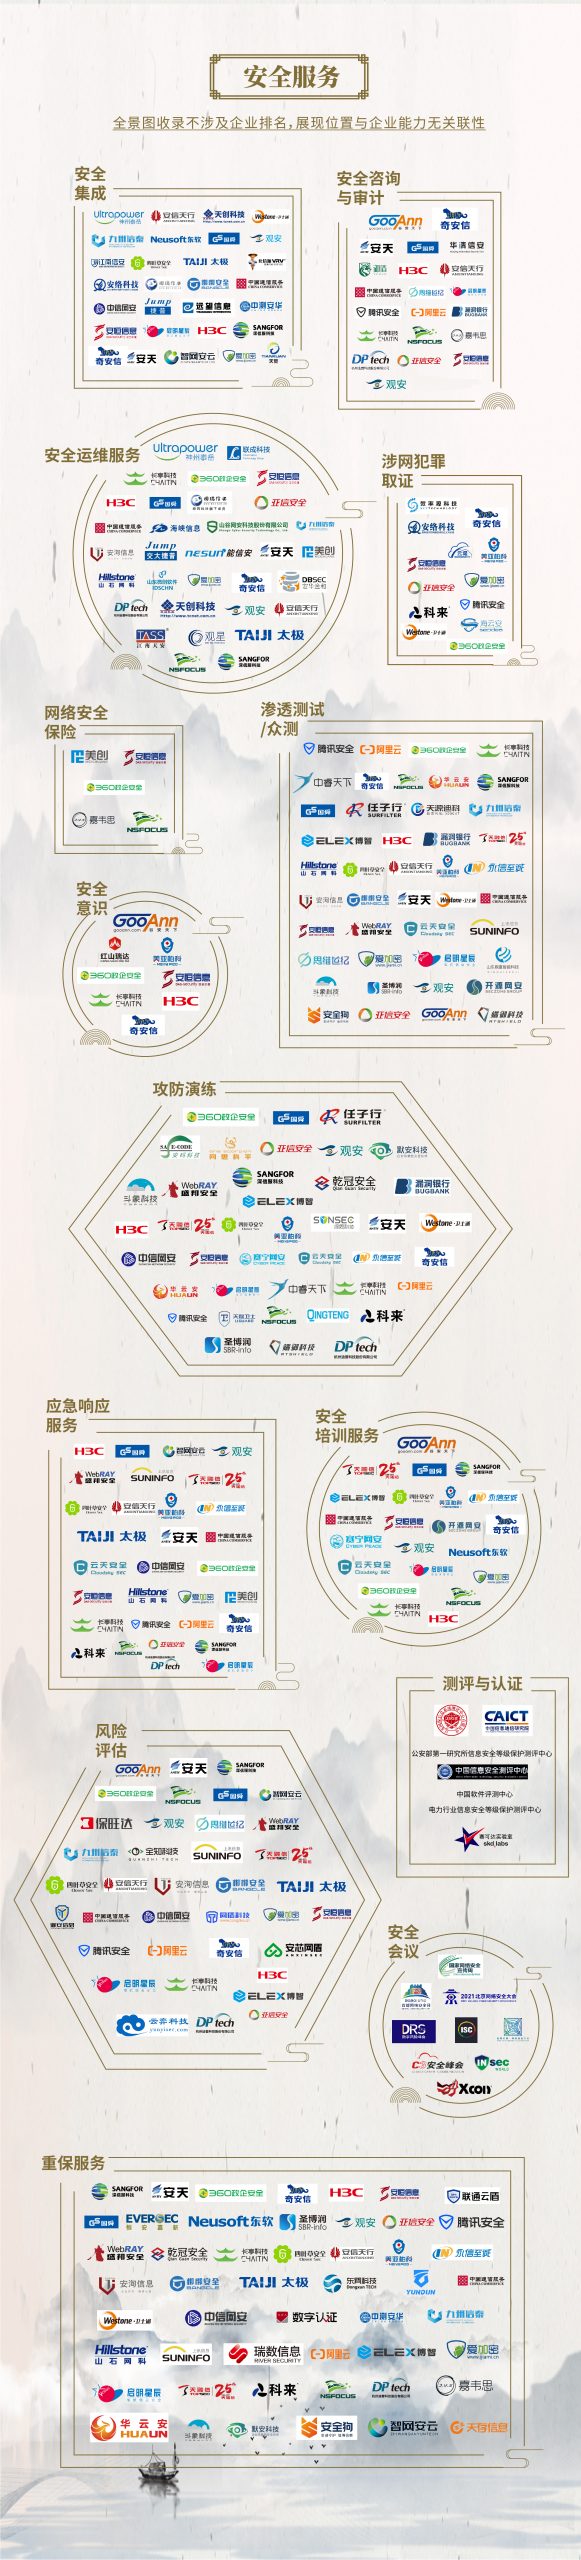 中国网络安全产业全景图 - 图37